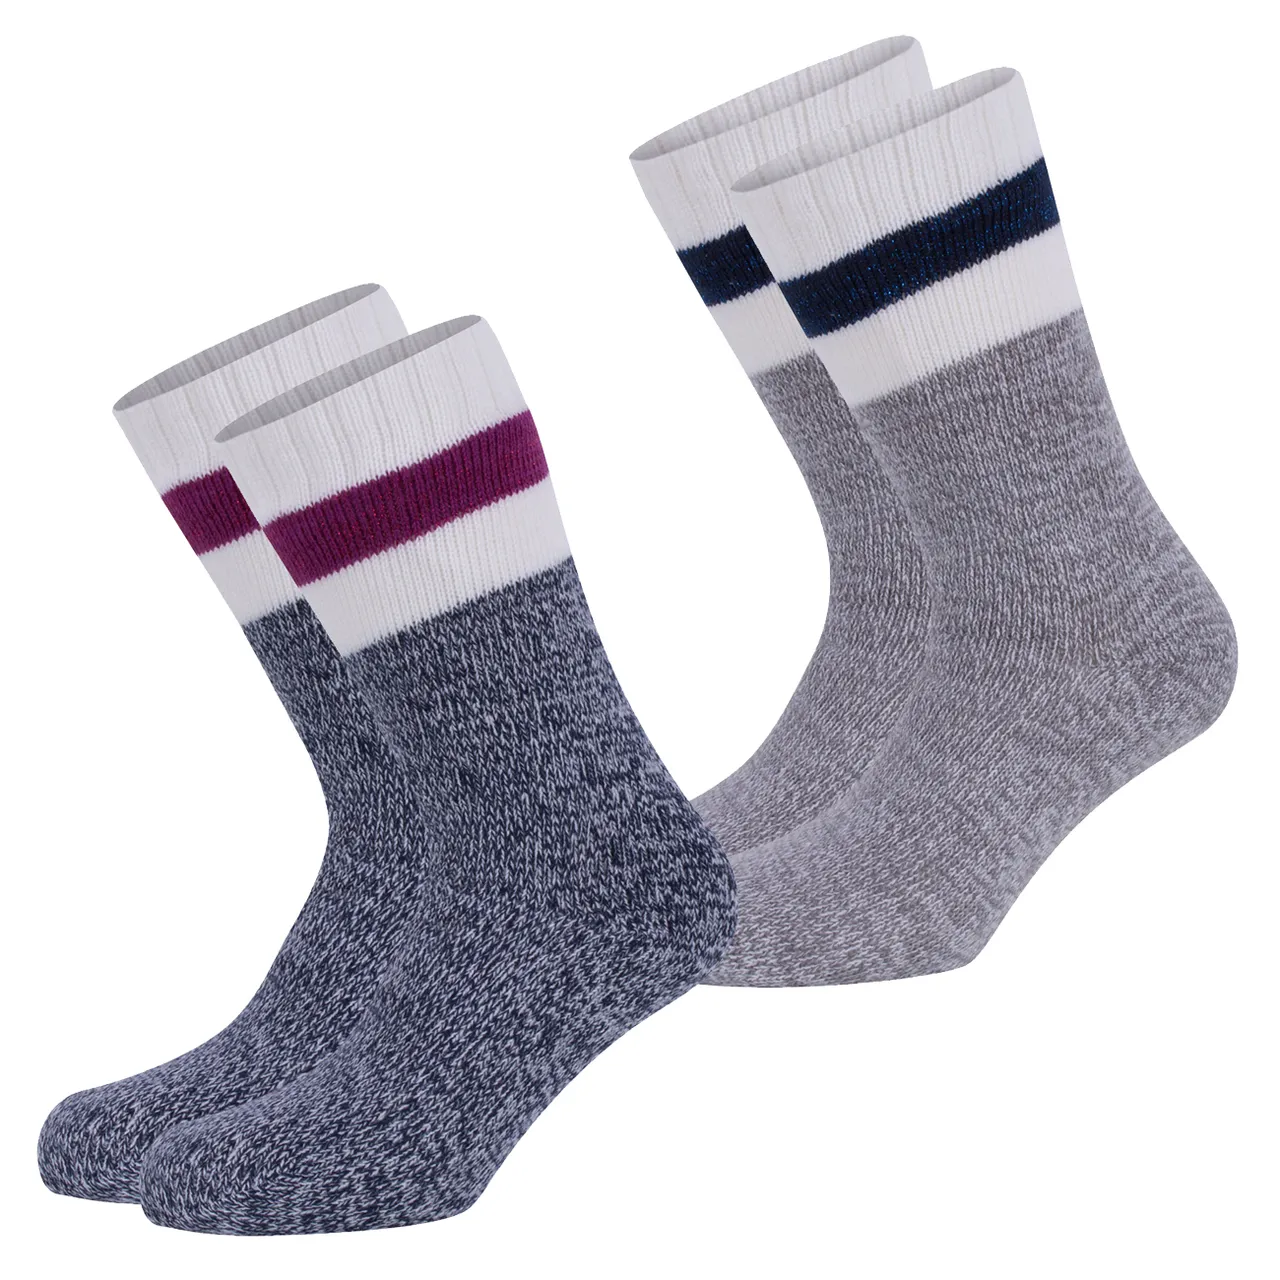 S.Oliver Damen Fashion Hygge Home-socks 2er Pack 37-38 39-40 41-42